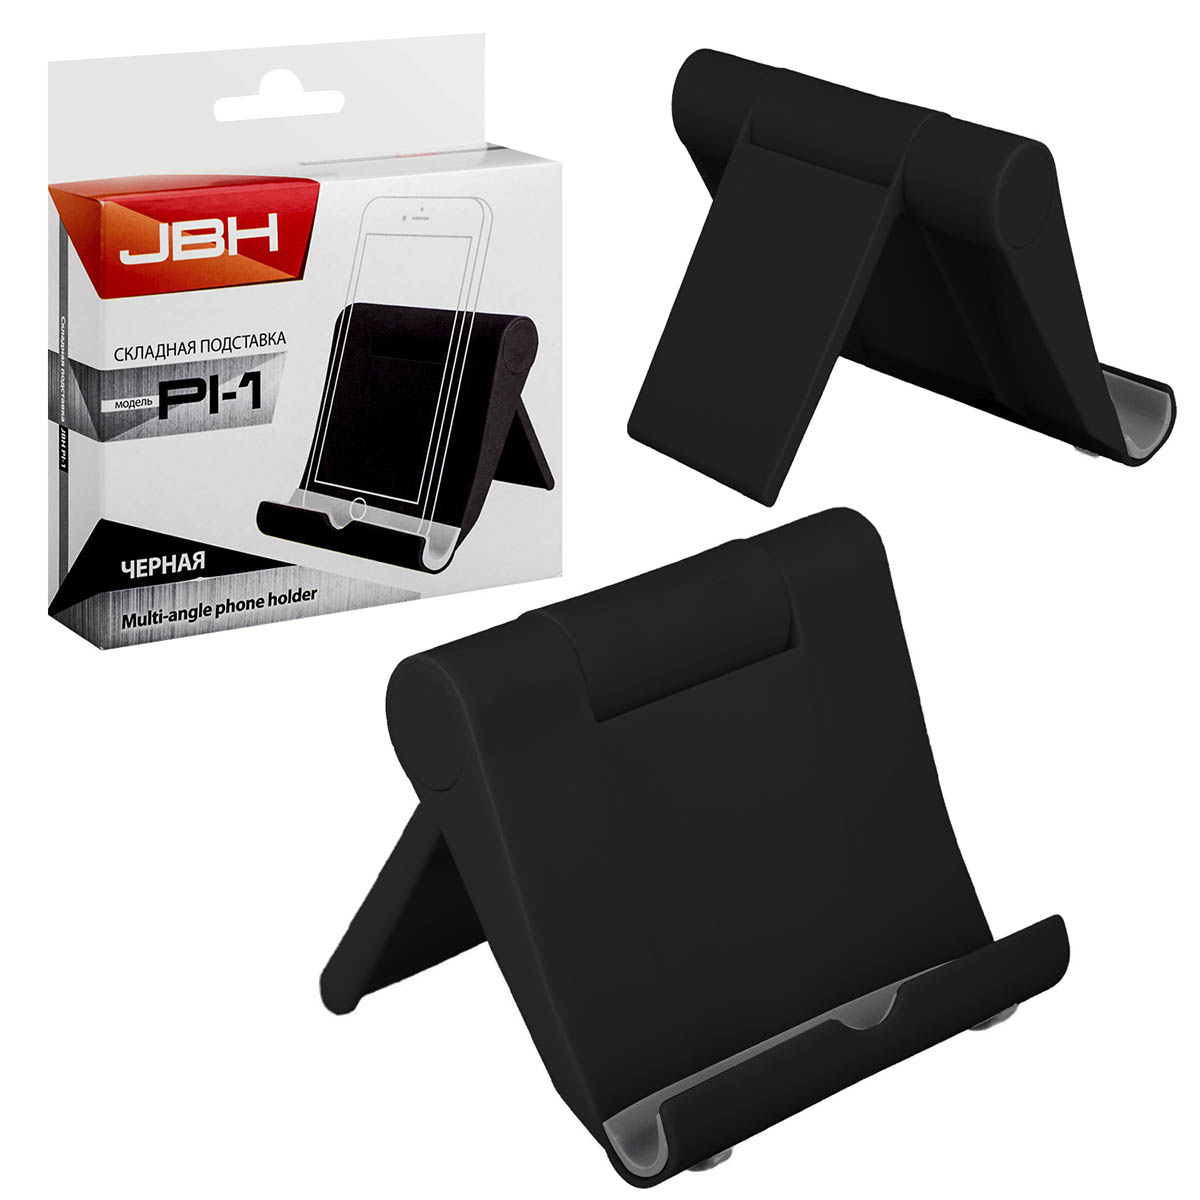 Настольная подставка, держатель JBH PL-1 для телефона, смартфона, планшета, цвет черный